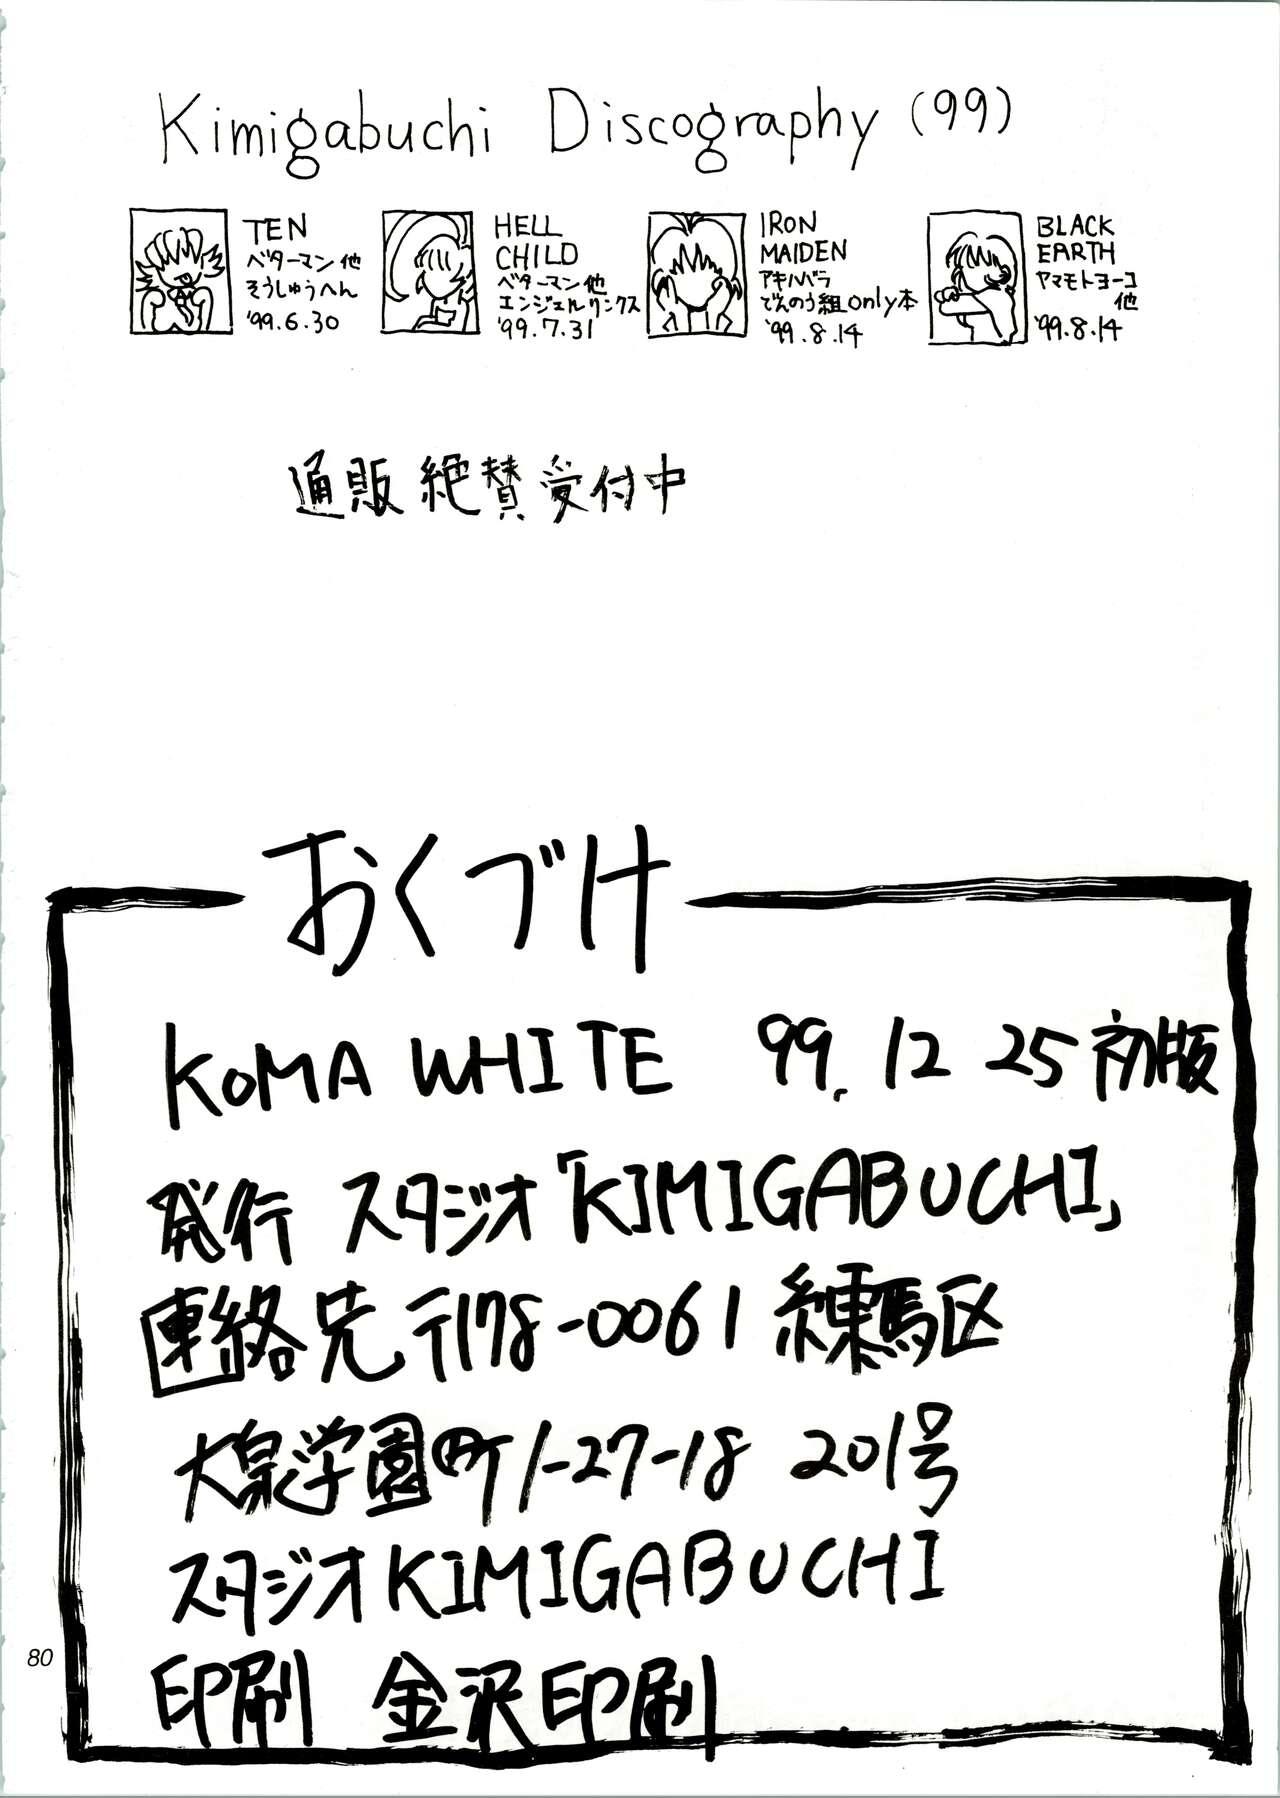 KOMA WHITE 79